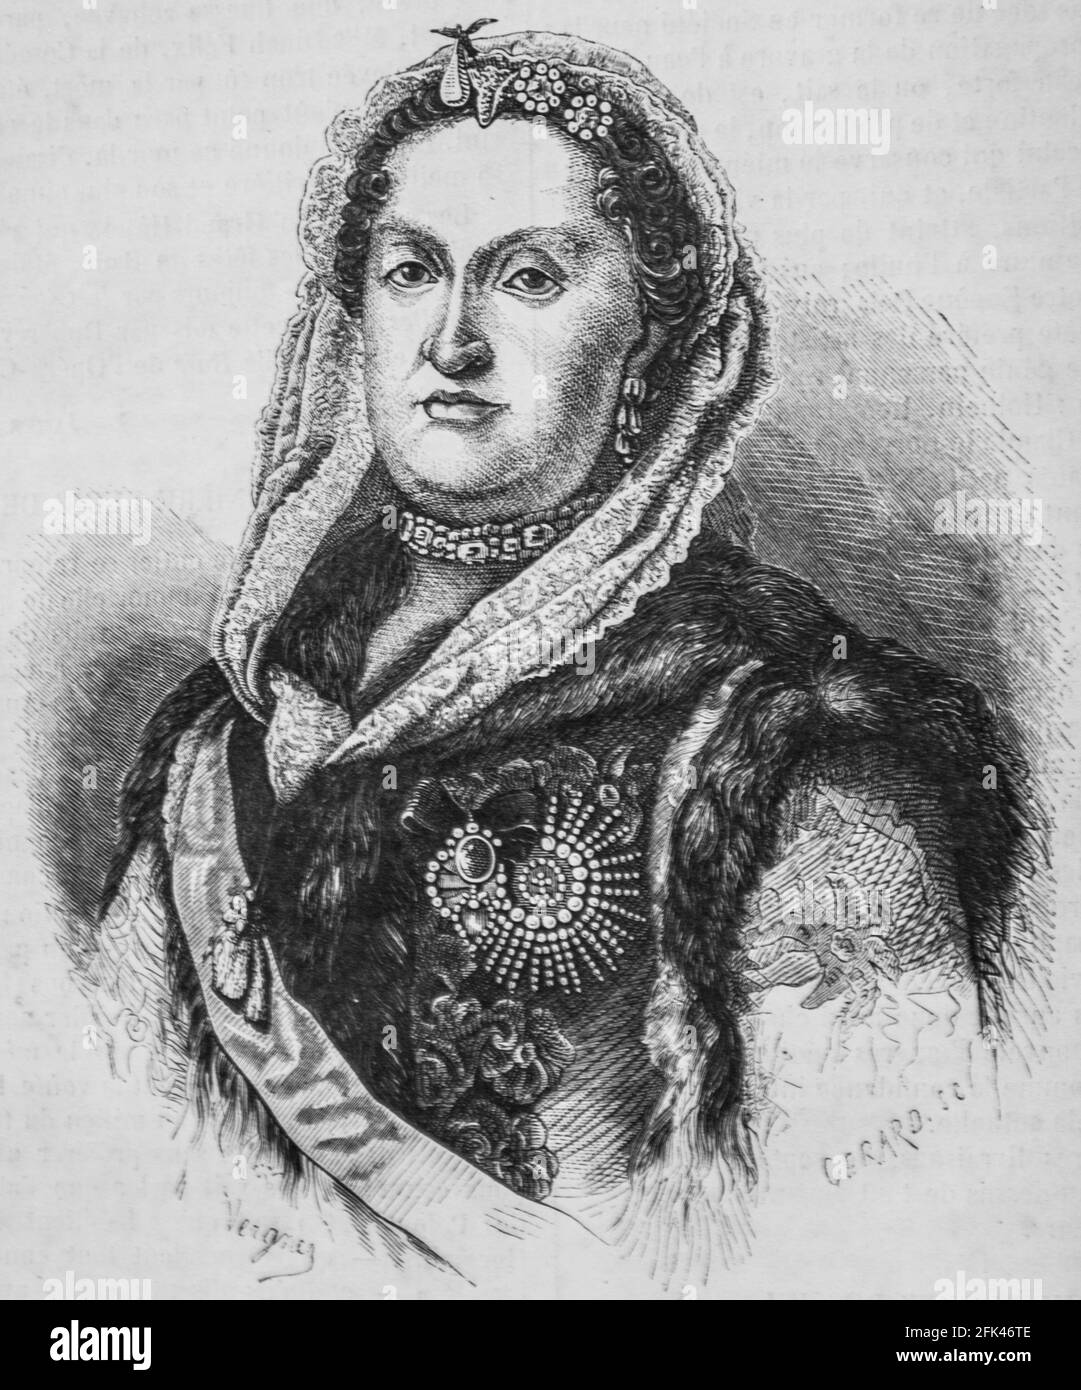 maria-josepha,reine de pologne,musee des familles,editeur ch,wallut,1862 Foto Stock